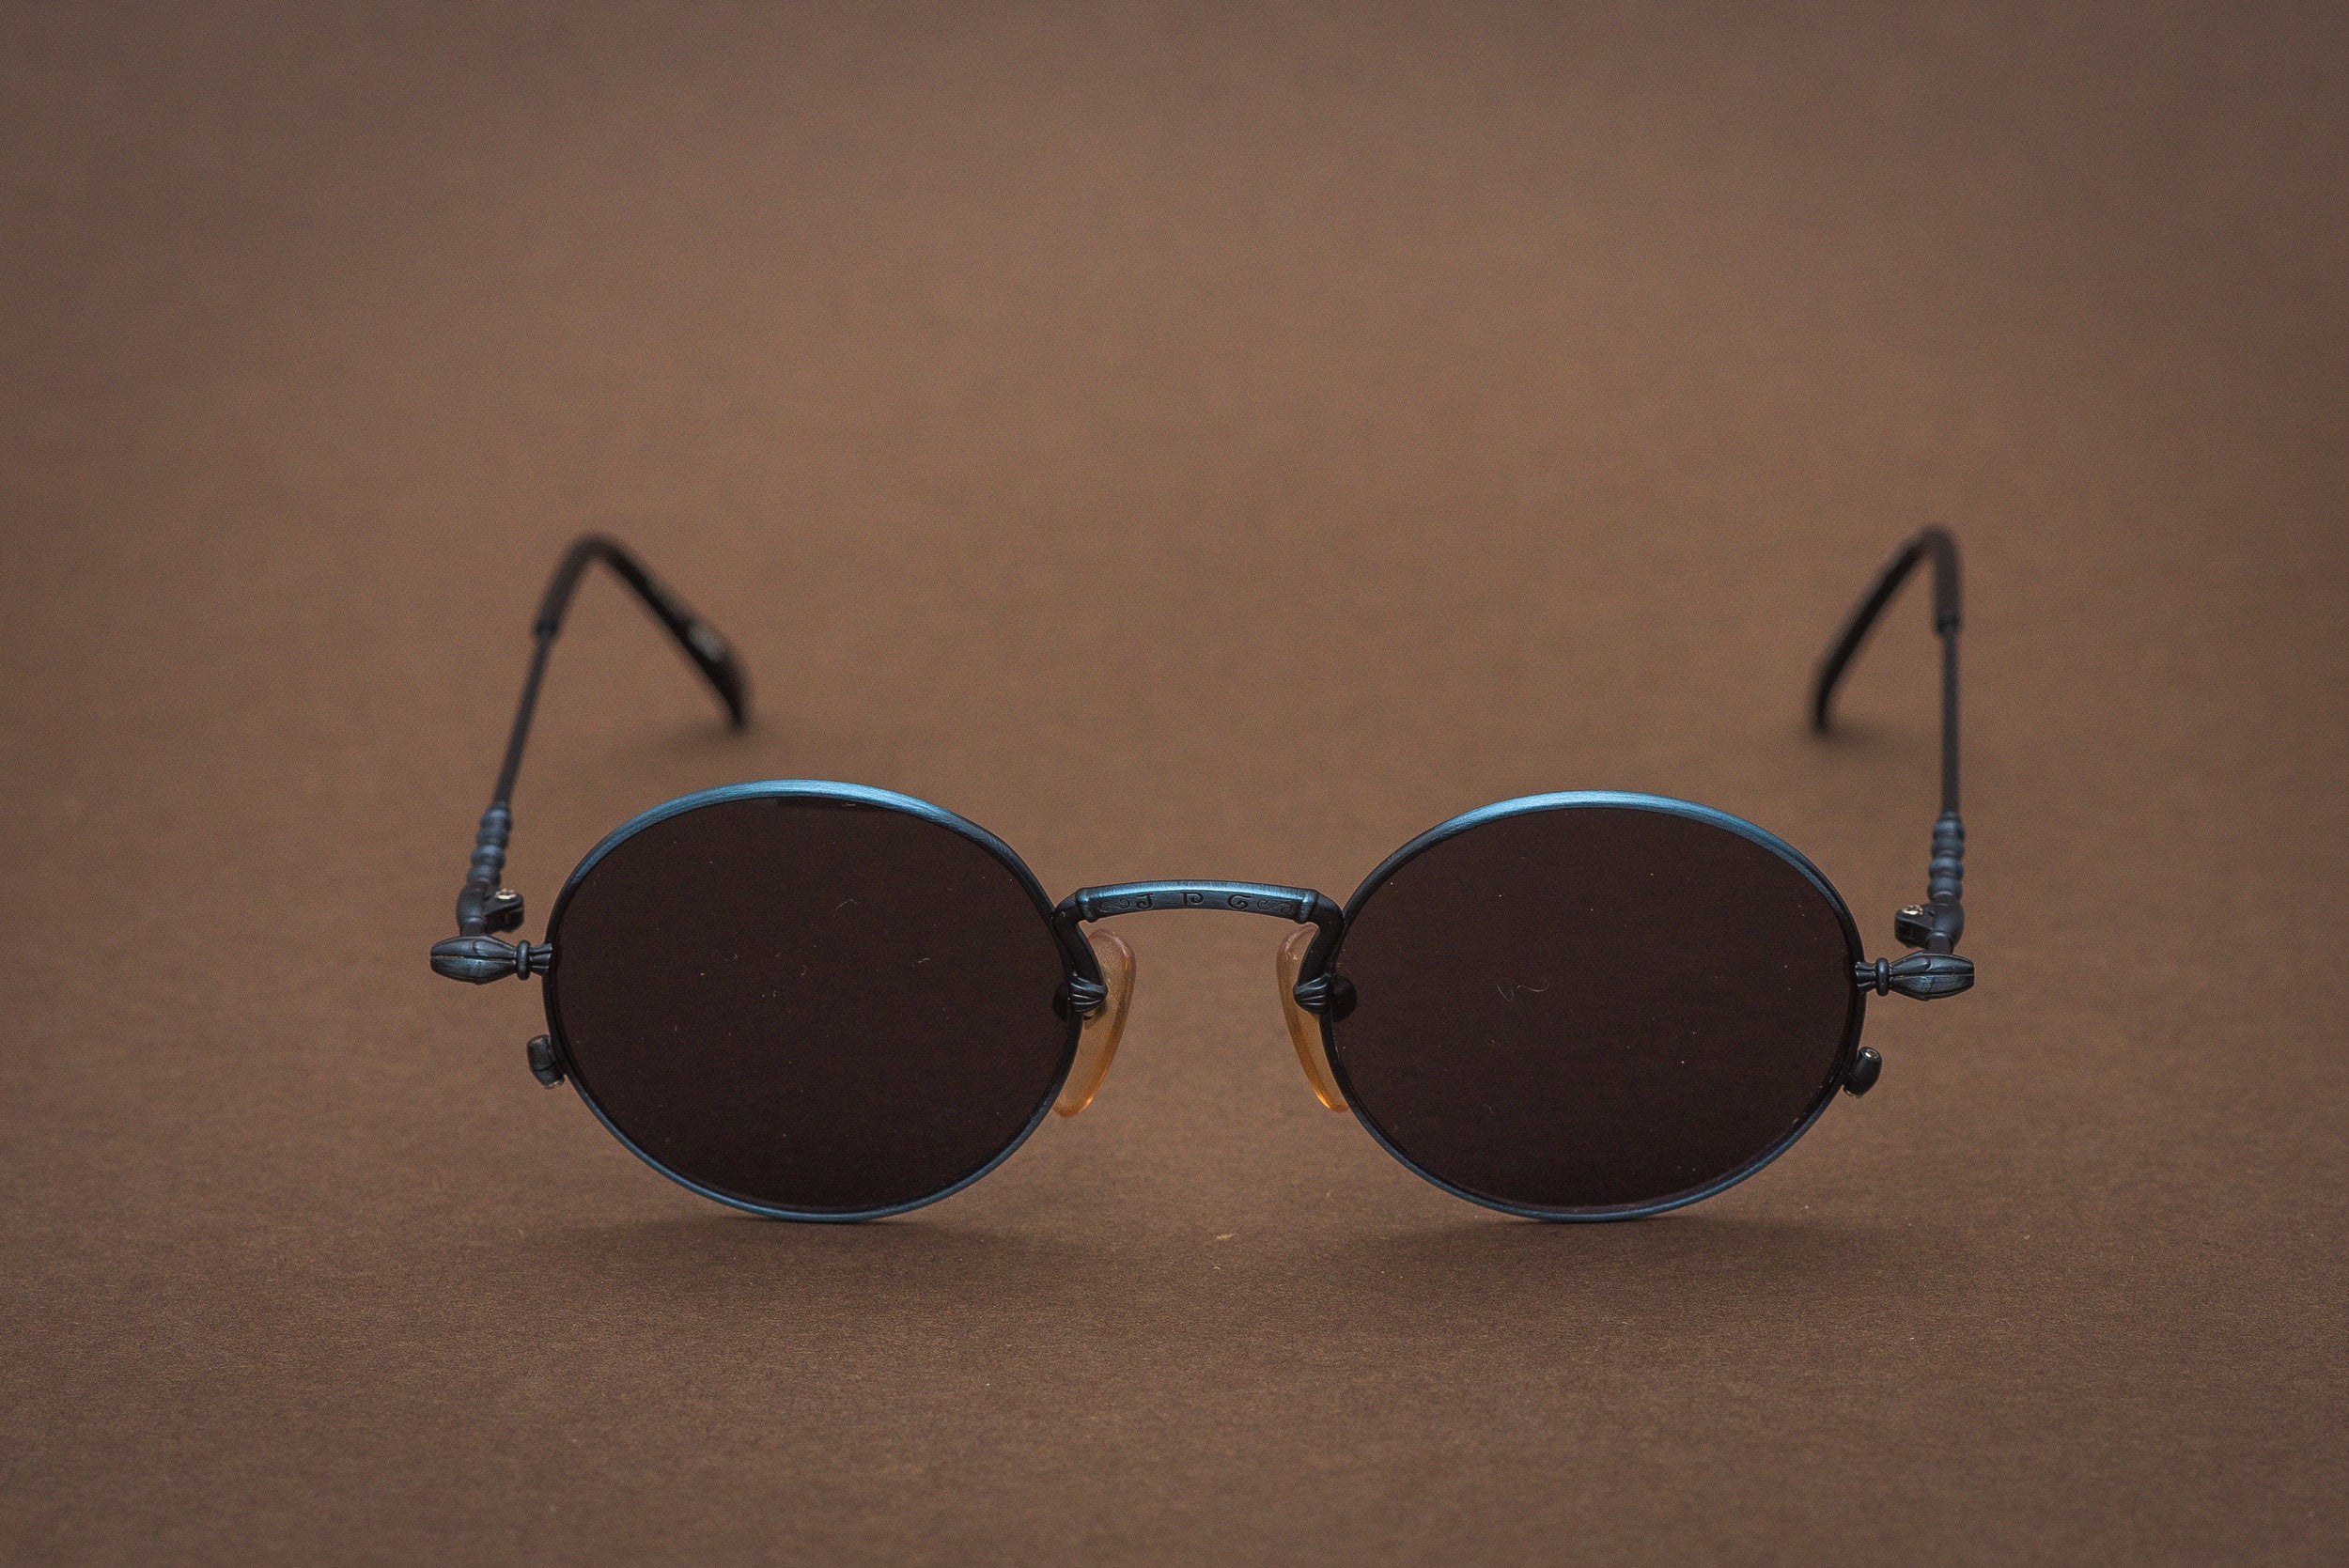 Jean Paul Gaultier 55-4171 sunglasses